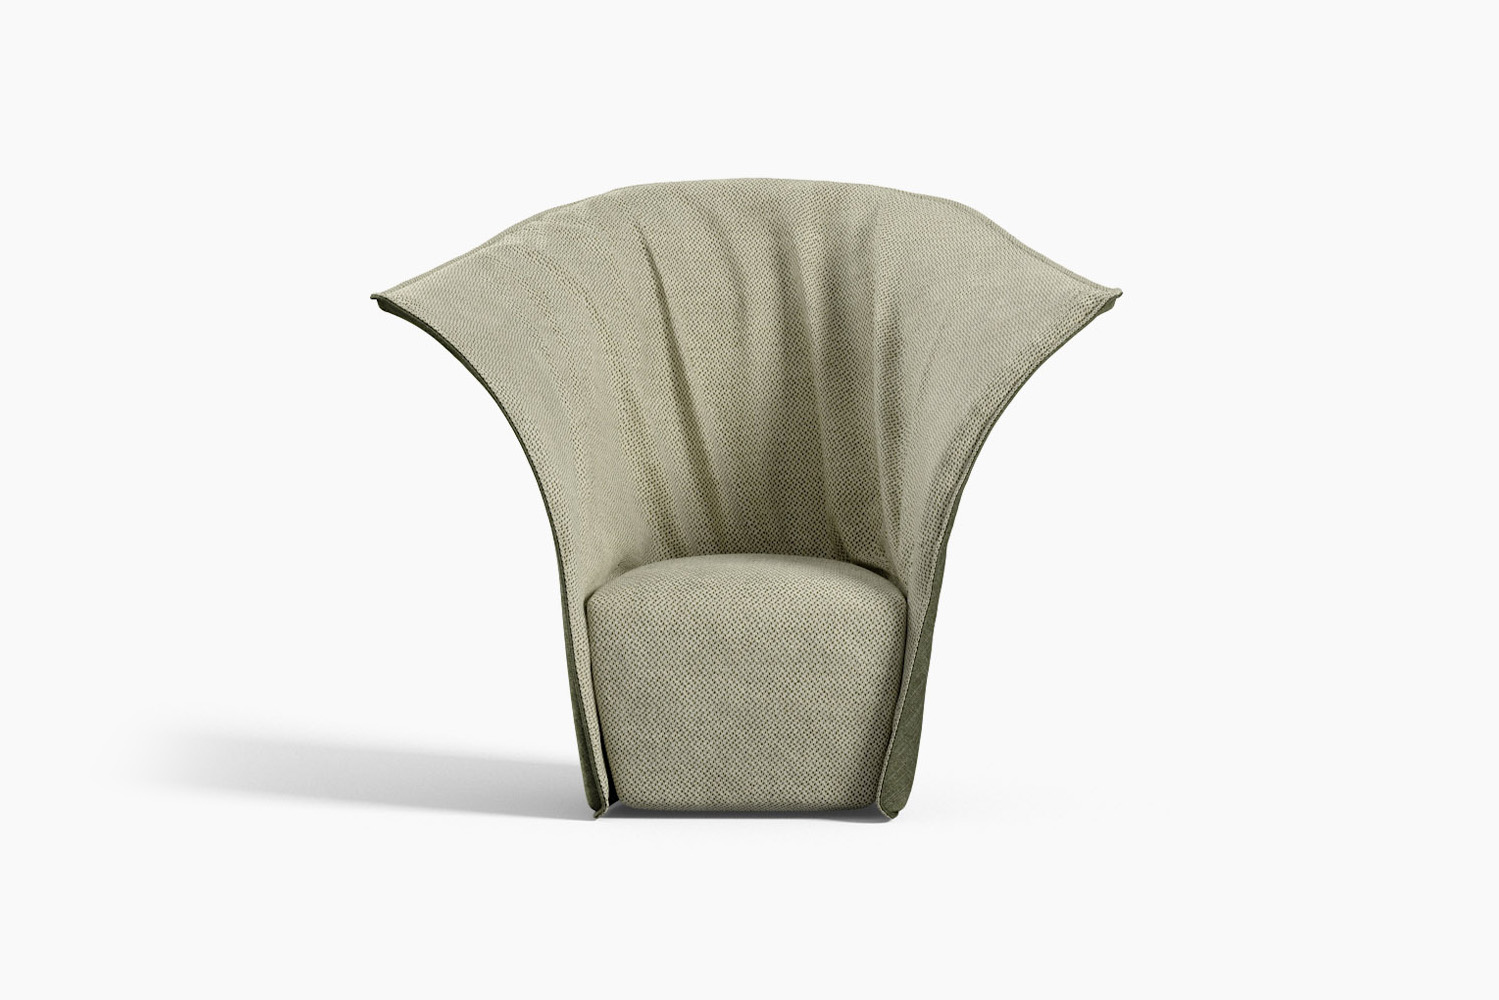 Artichoke luxury Italian modern armchair by Novamobili. Sold by Krieder UK.